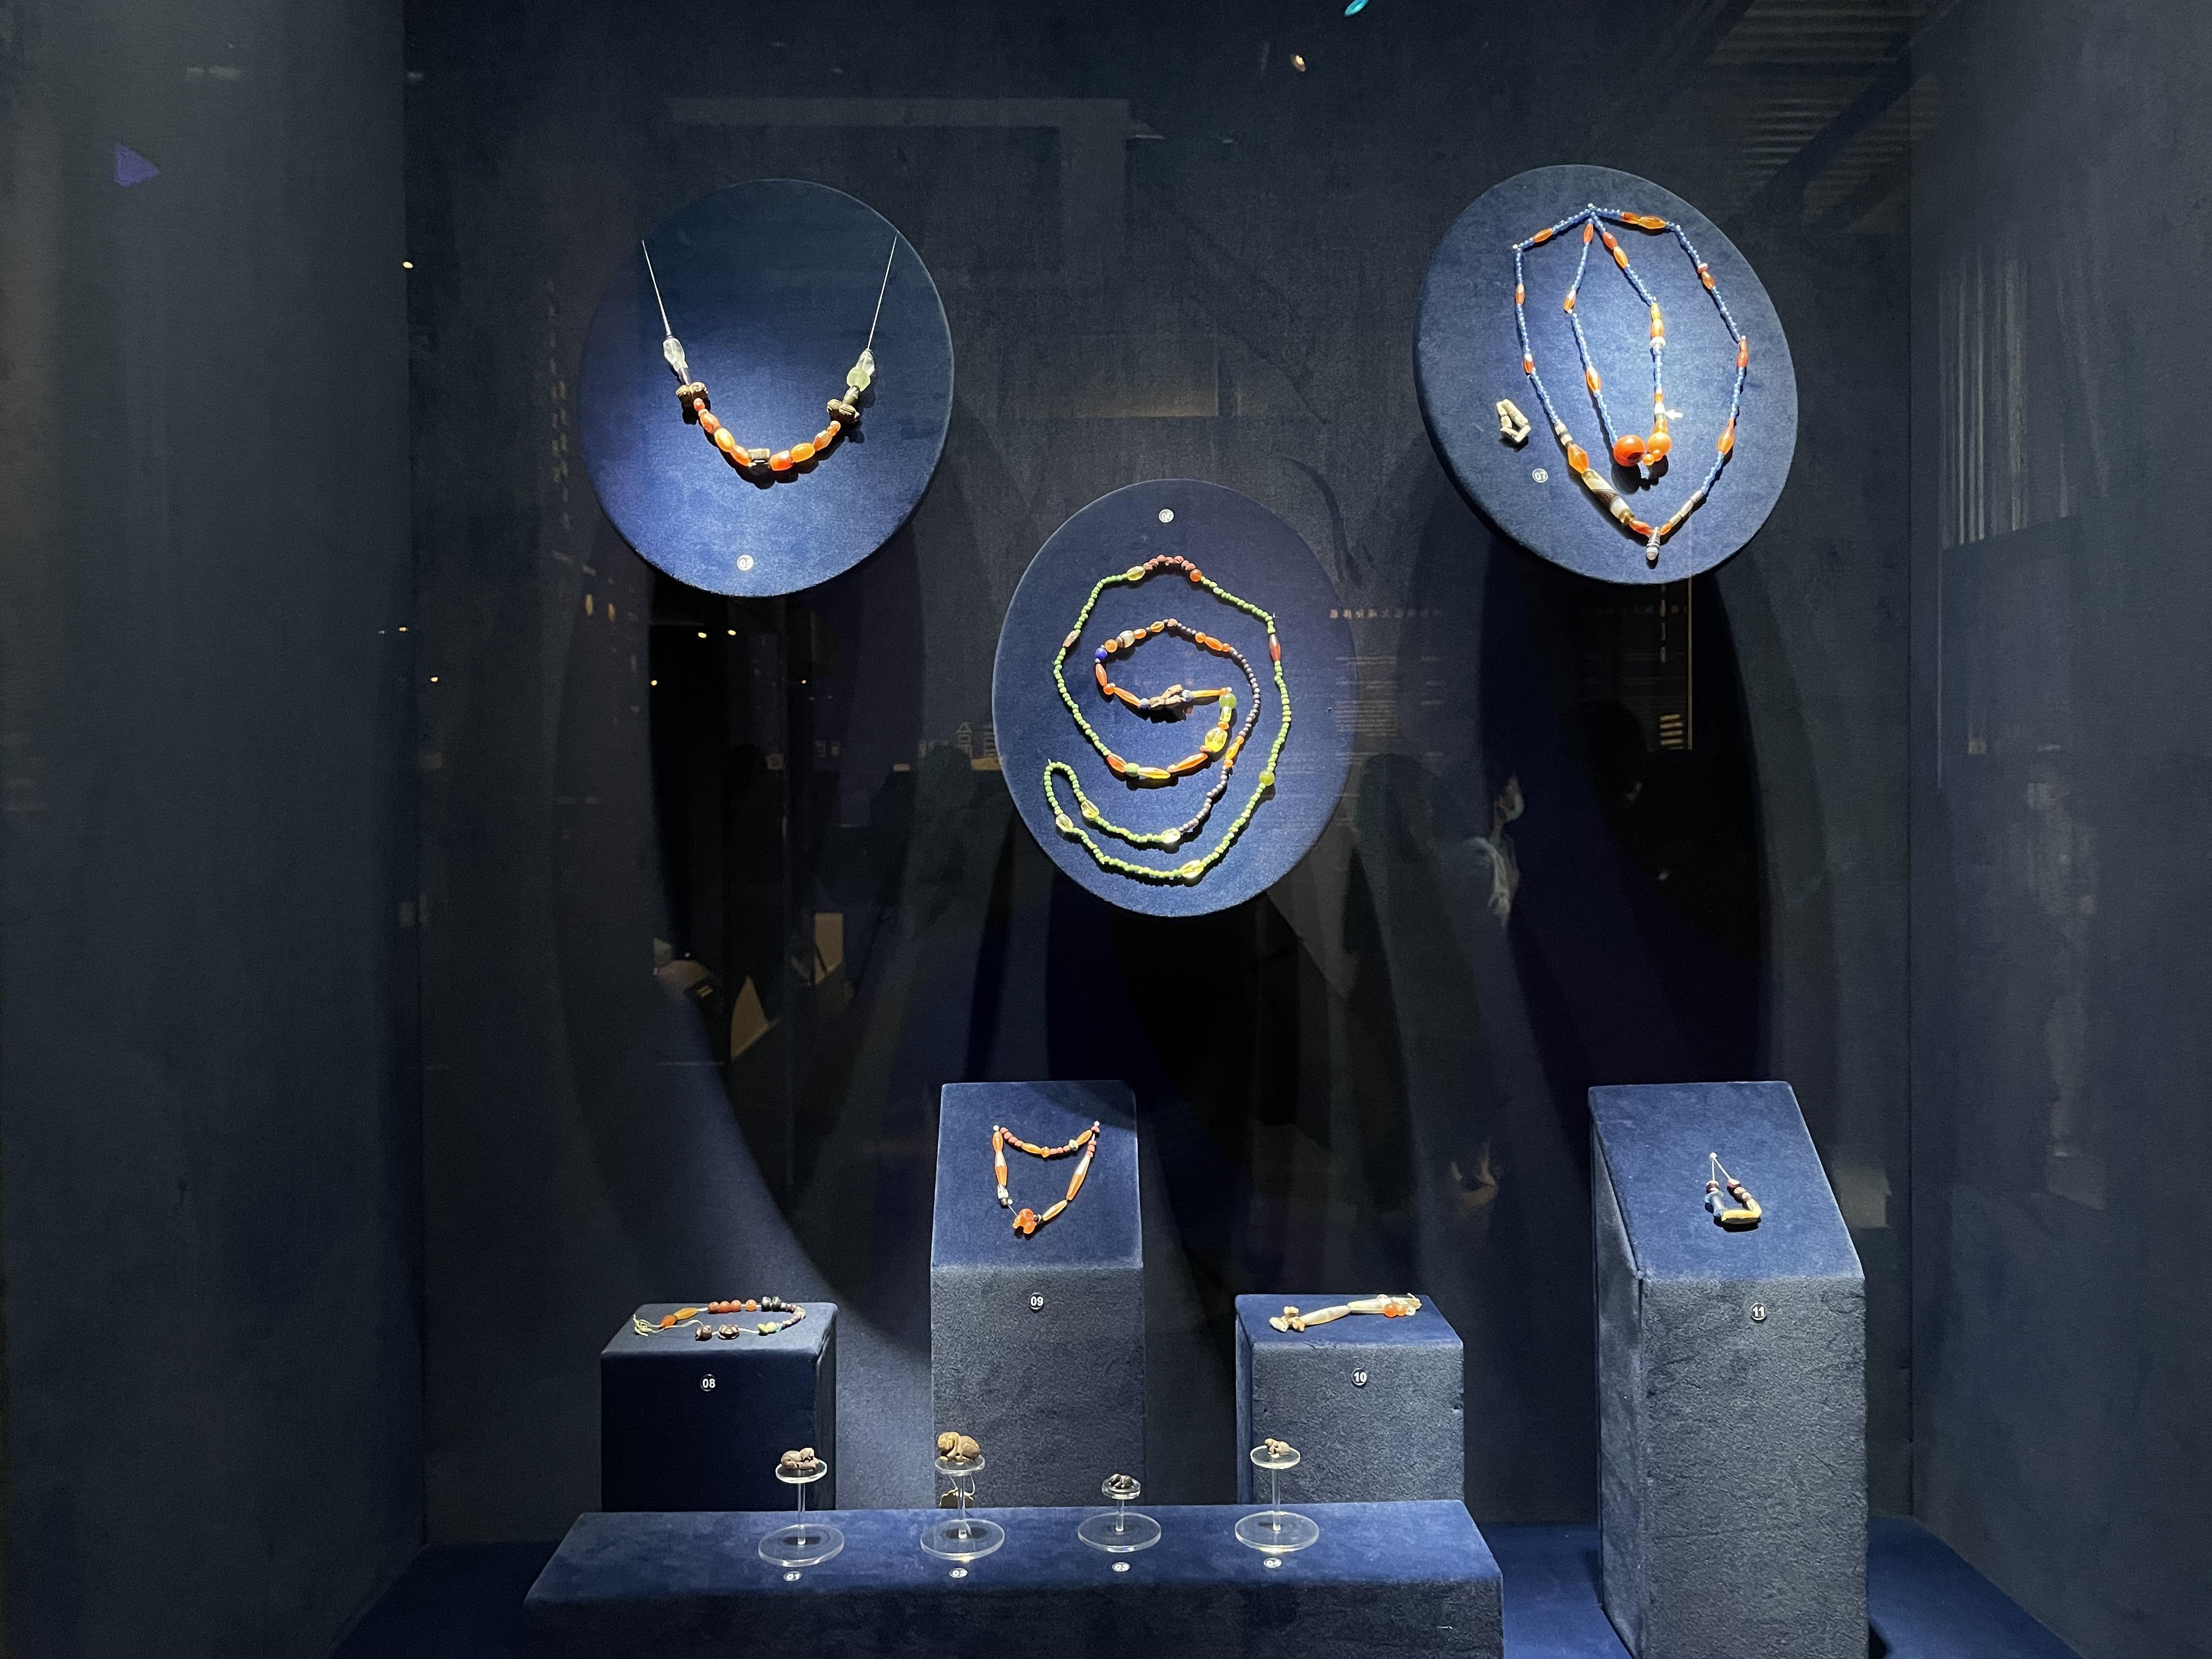 广州出土汉代珠饰展在南汉二陵博物馆开幕